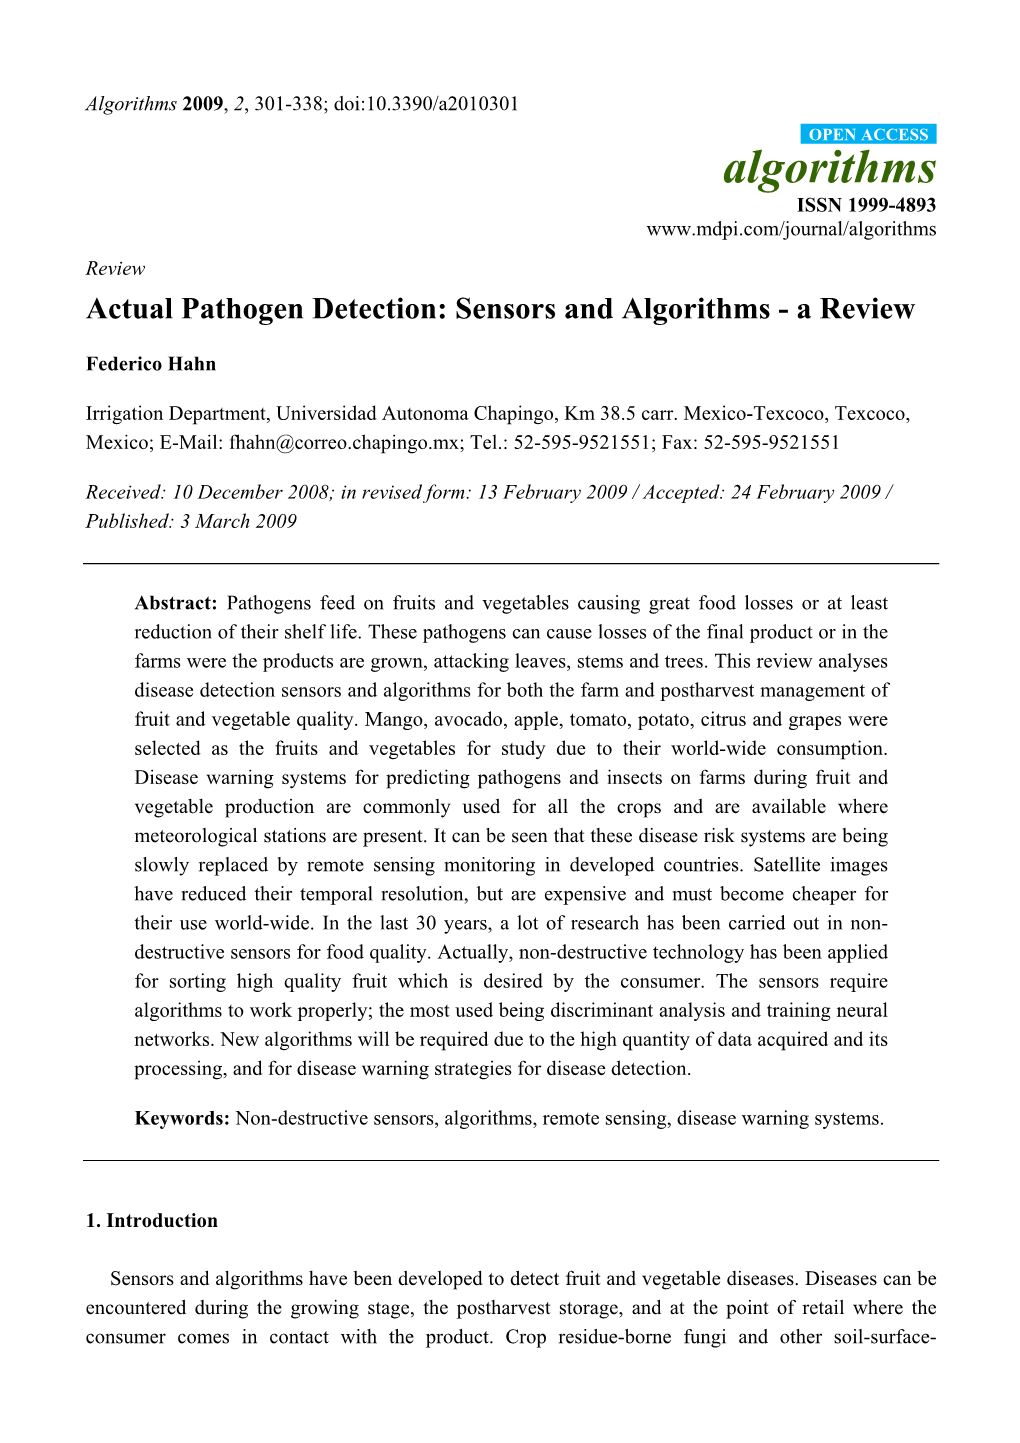 Actual Pathogen Detection: Sensors and Algorithms - a Review